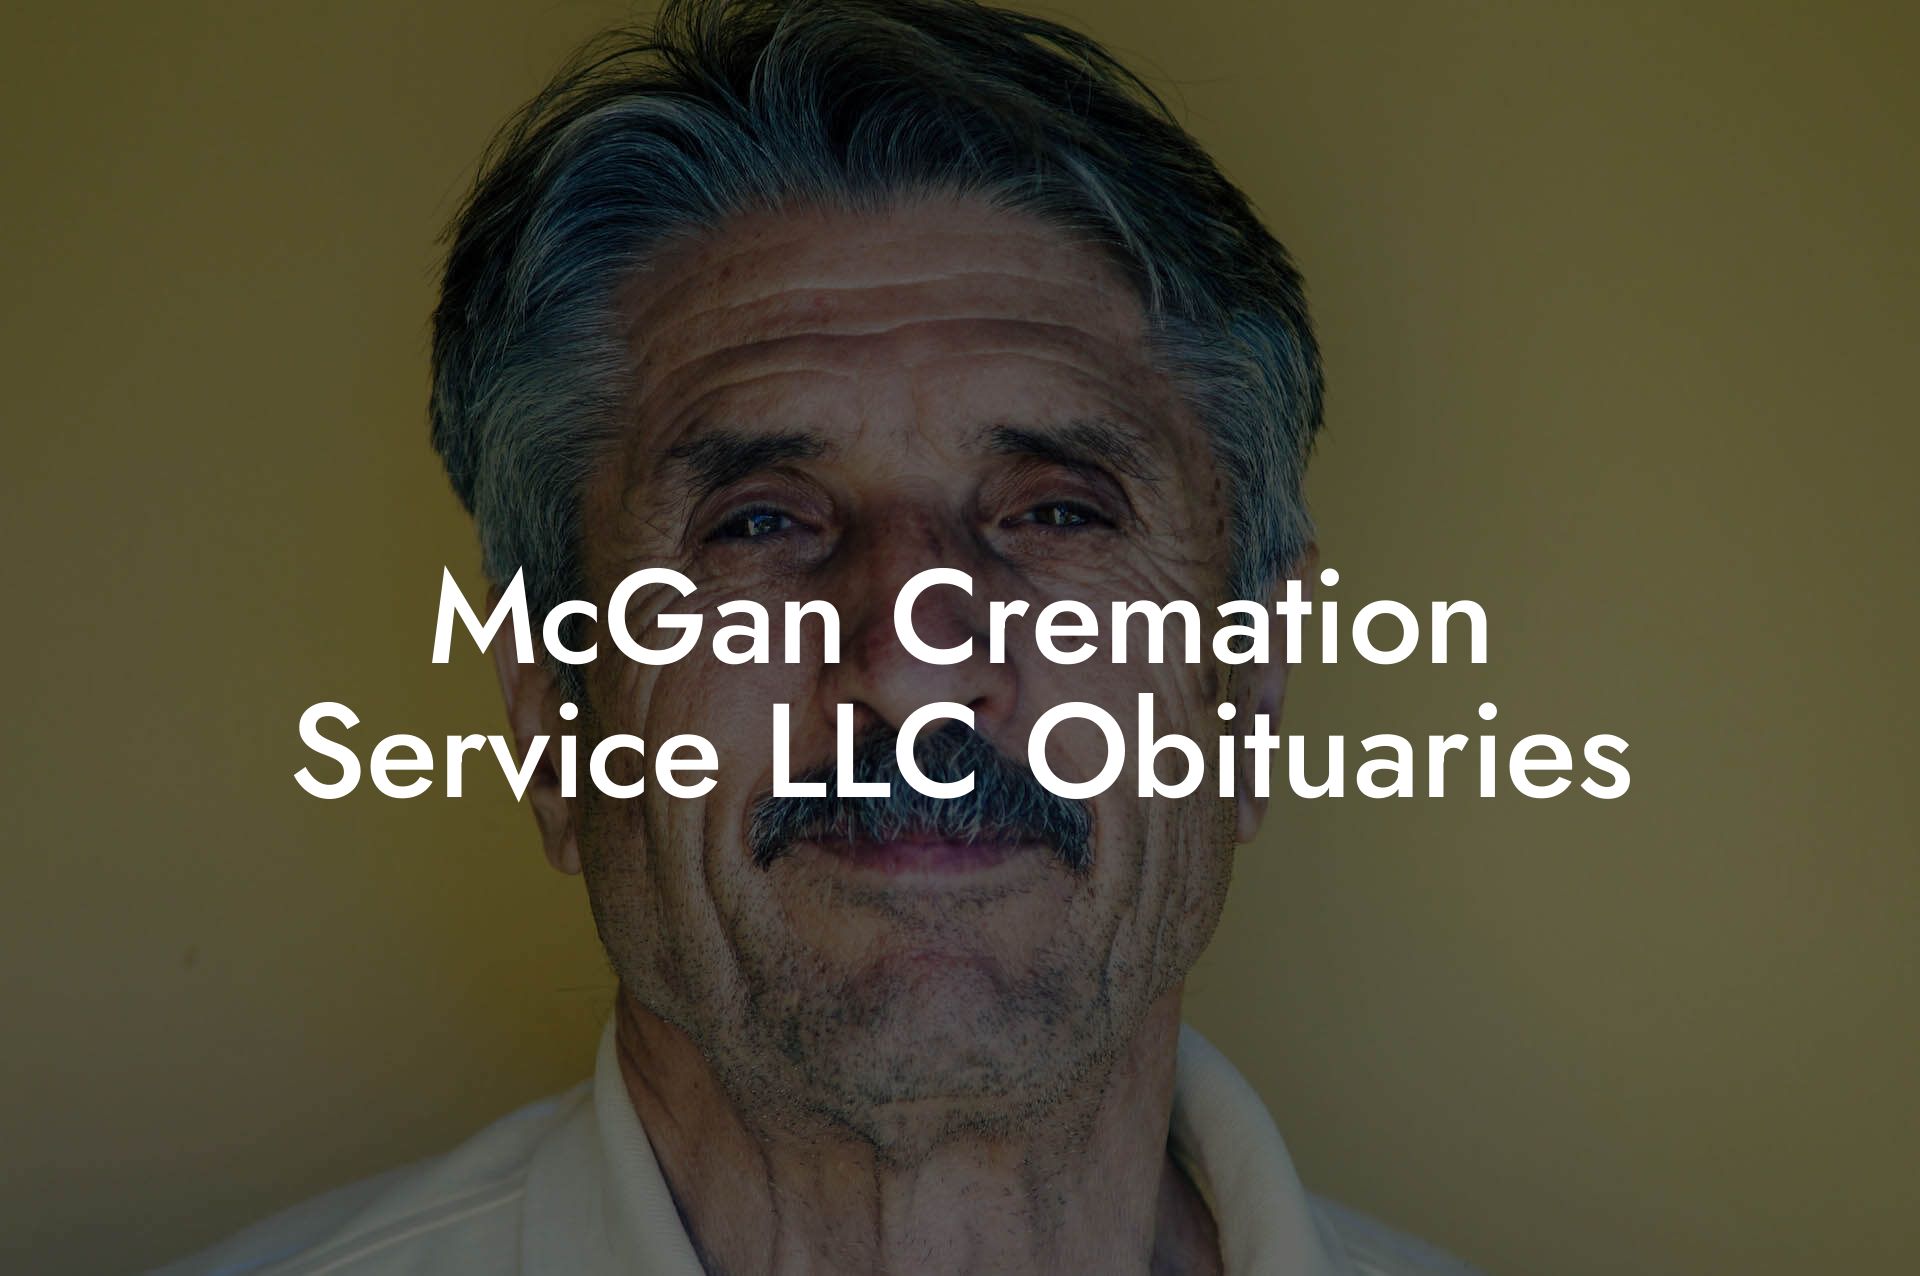 McGan Cremation Service LLC Obituaries